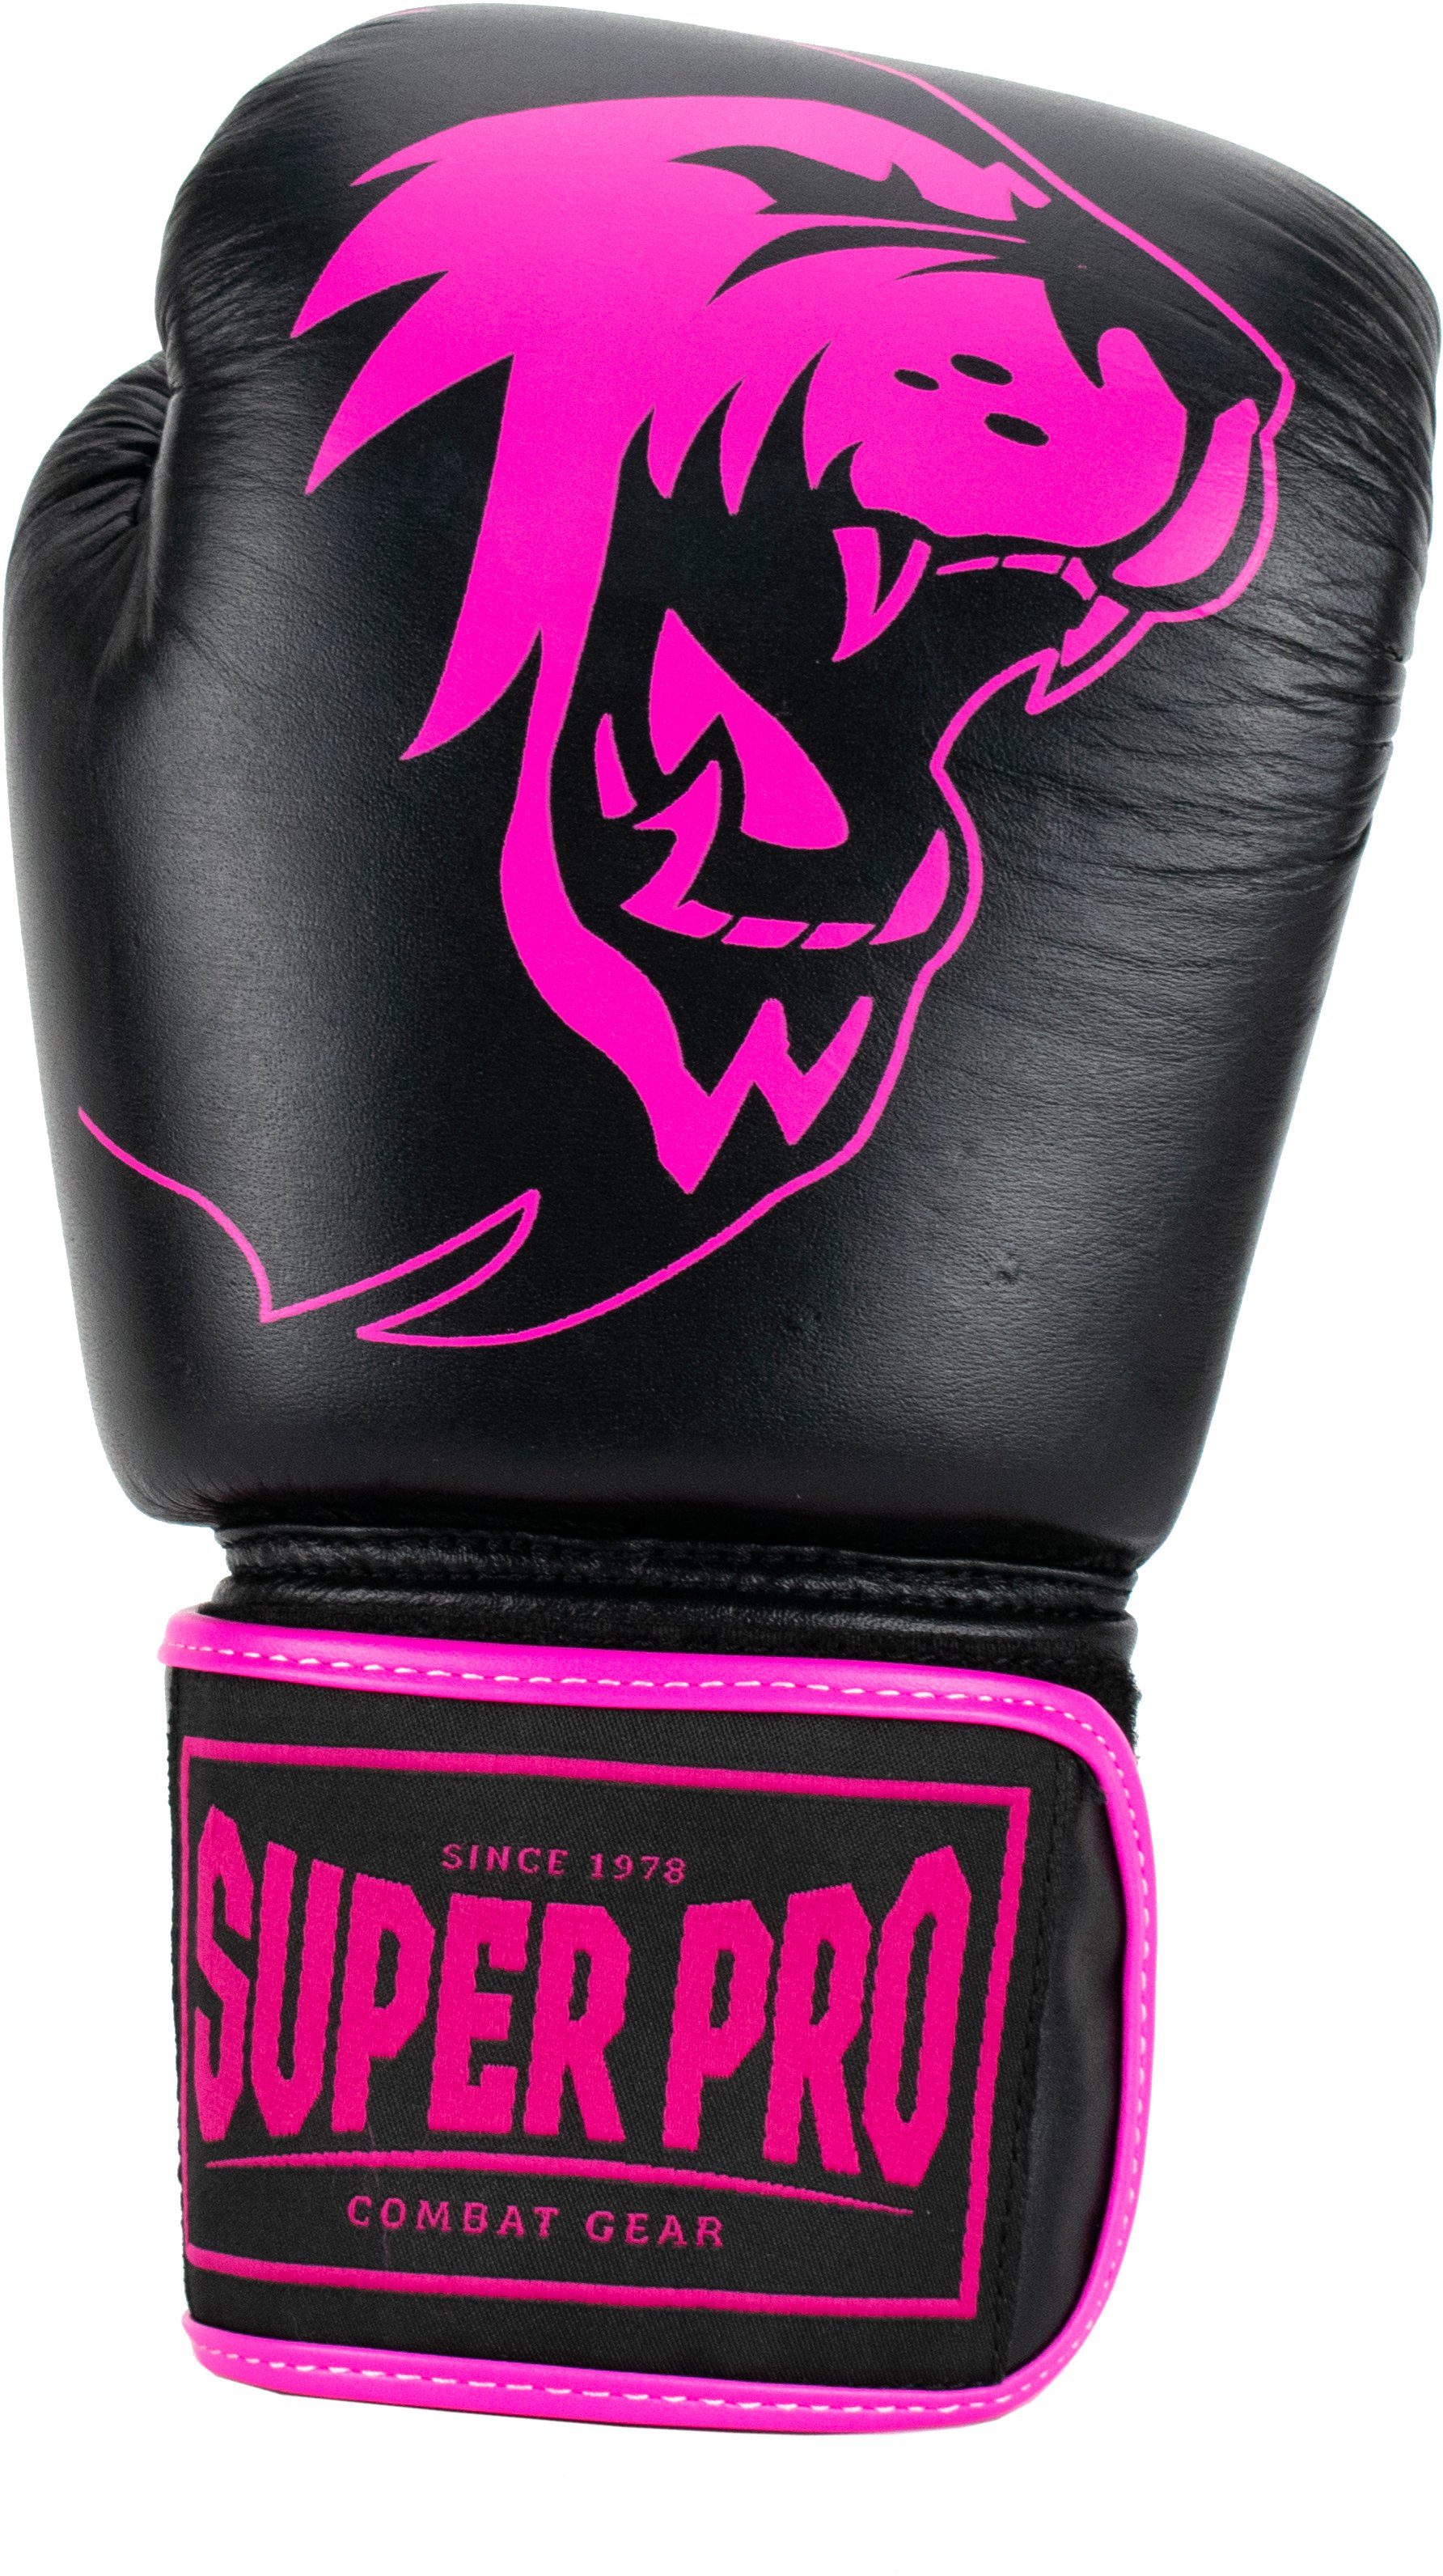 Pro Super Warrior Boxhandschuhe pink/schwarz